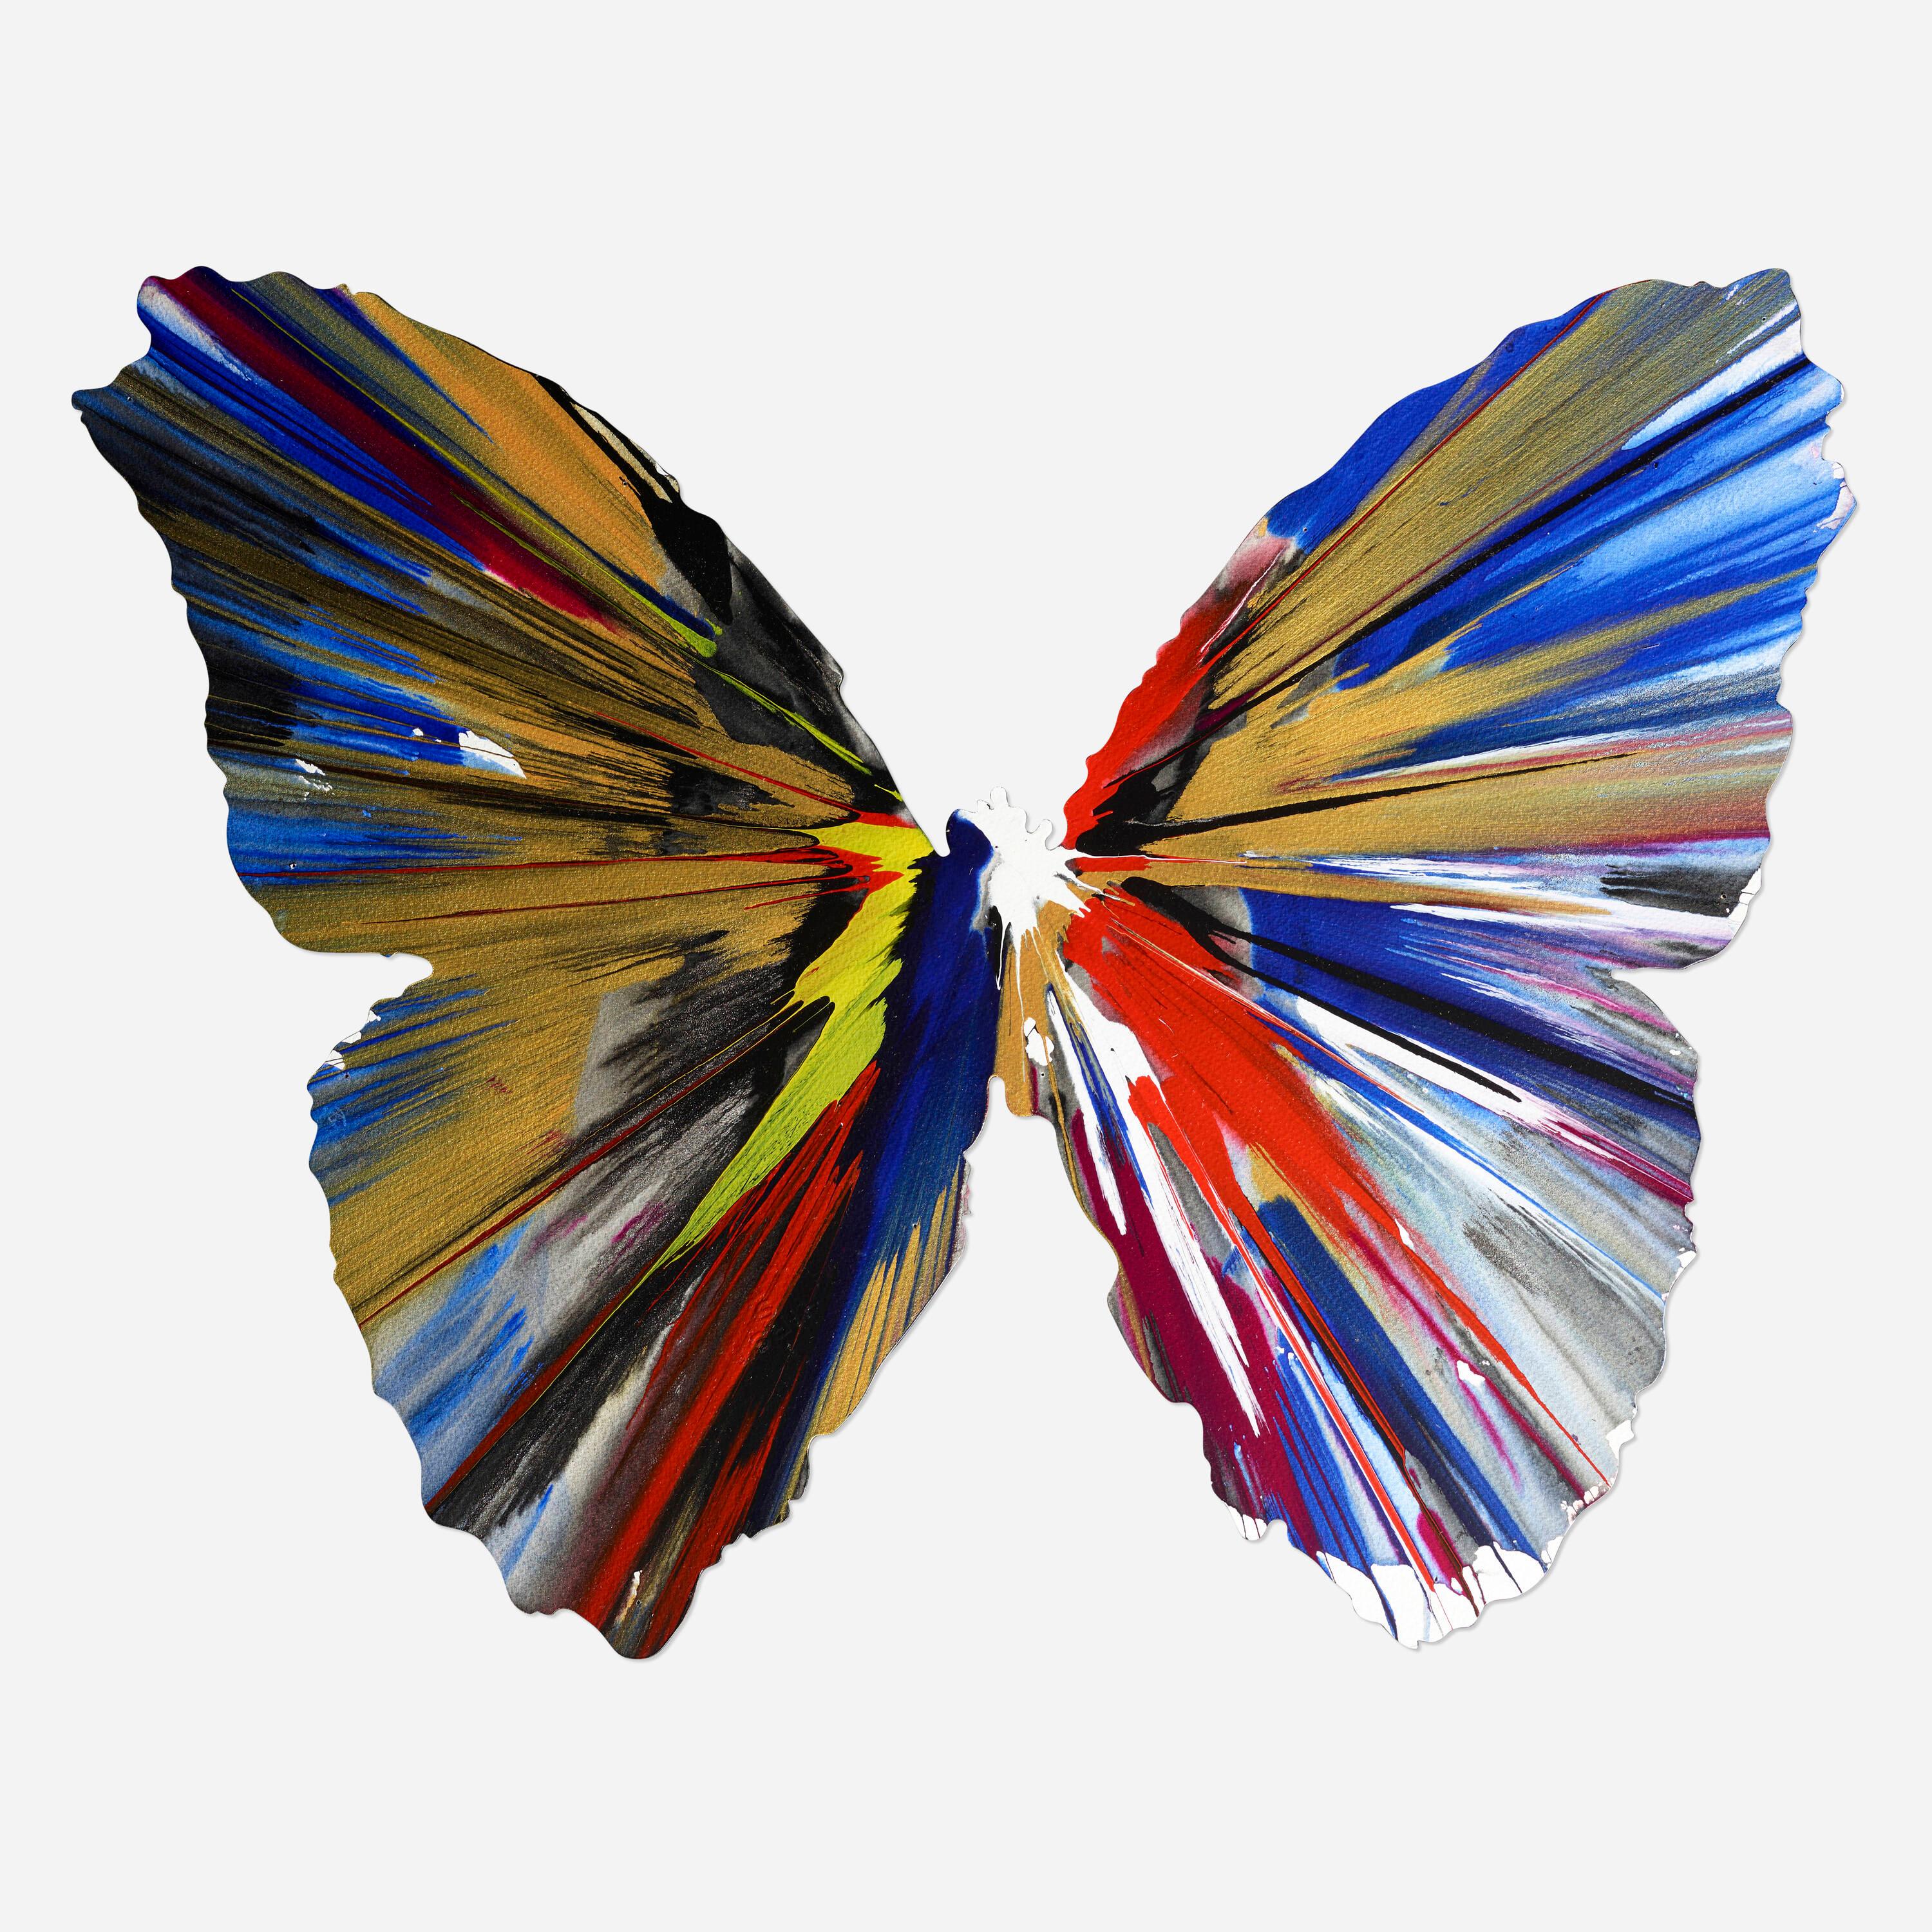 Il s'agit d'une peinture originale de Damien Hirst, créée avec la collaboration du public au Damien Hirst Spin Workshop pour célébrer l'ouverture de Requiem au PinchukArt Centre, en Ukraine.
Le tableau, découpé en forme de papillon, porte la